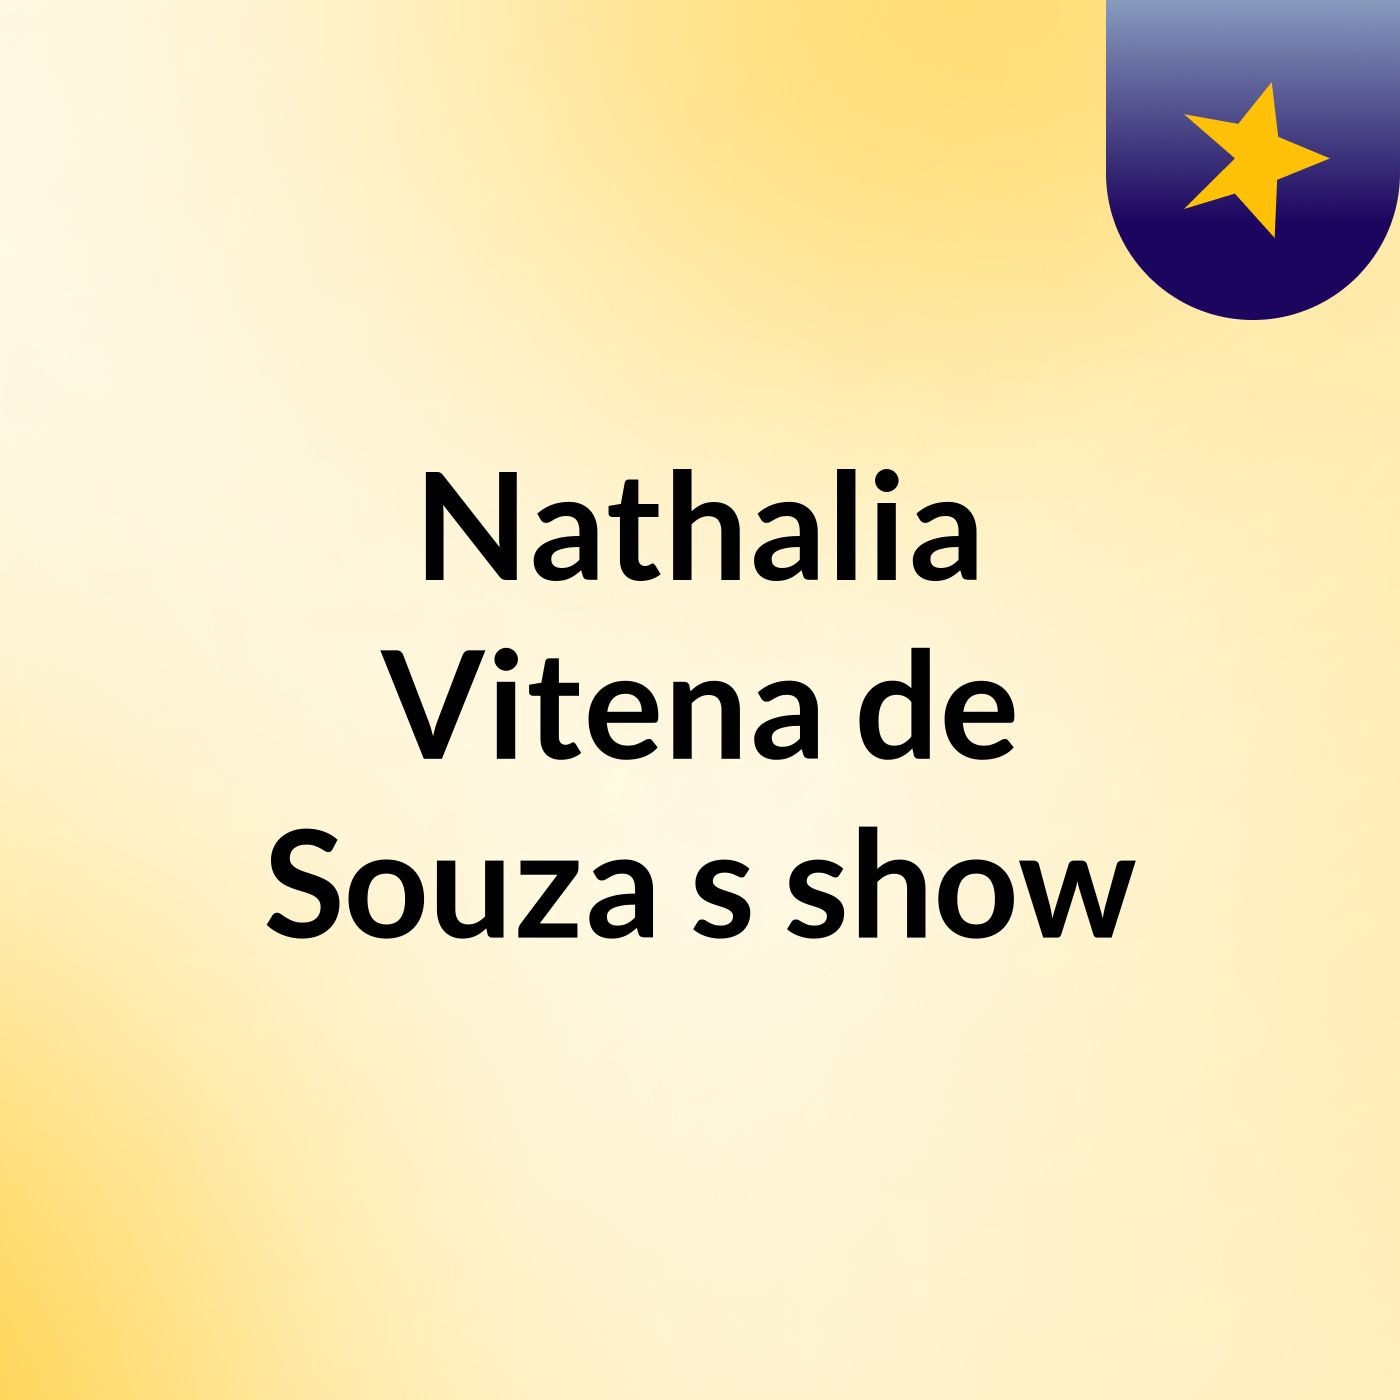 Nathalia Vitena de Souza's show